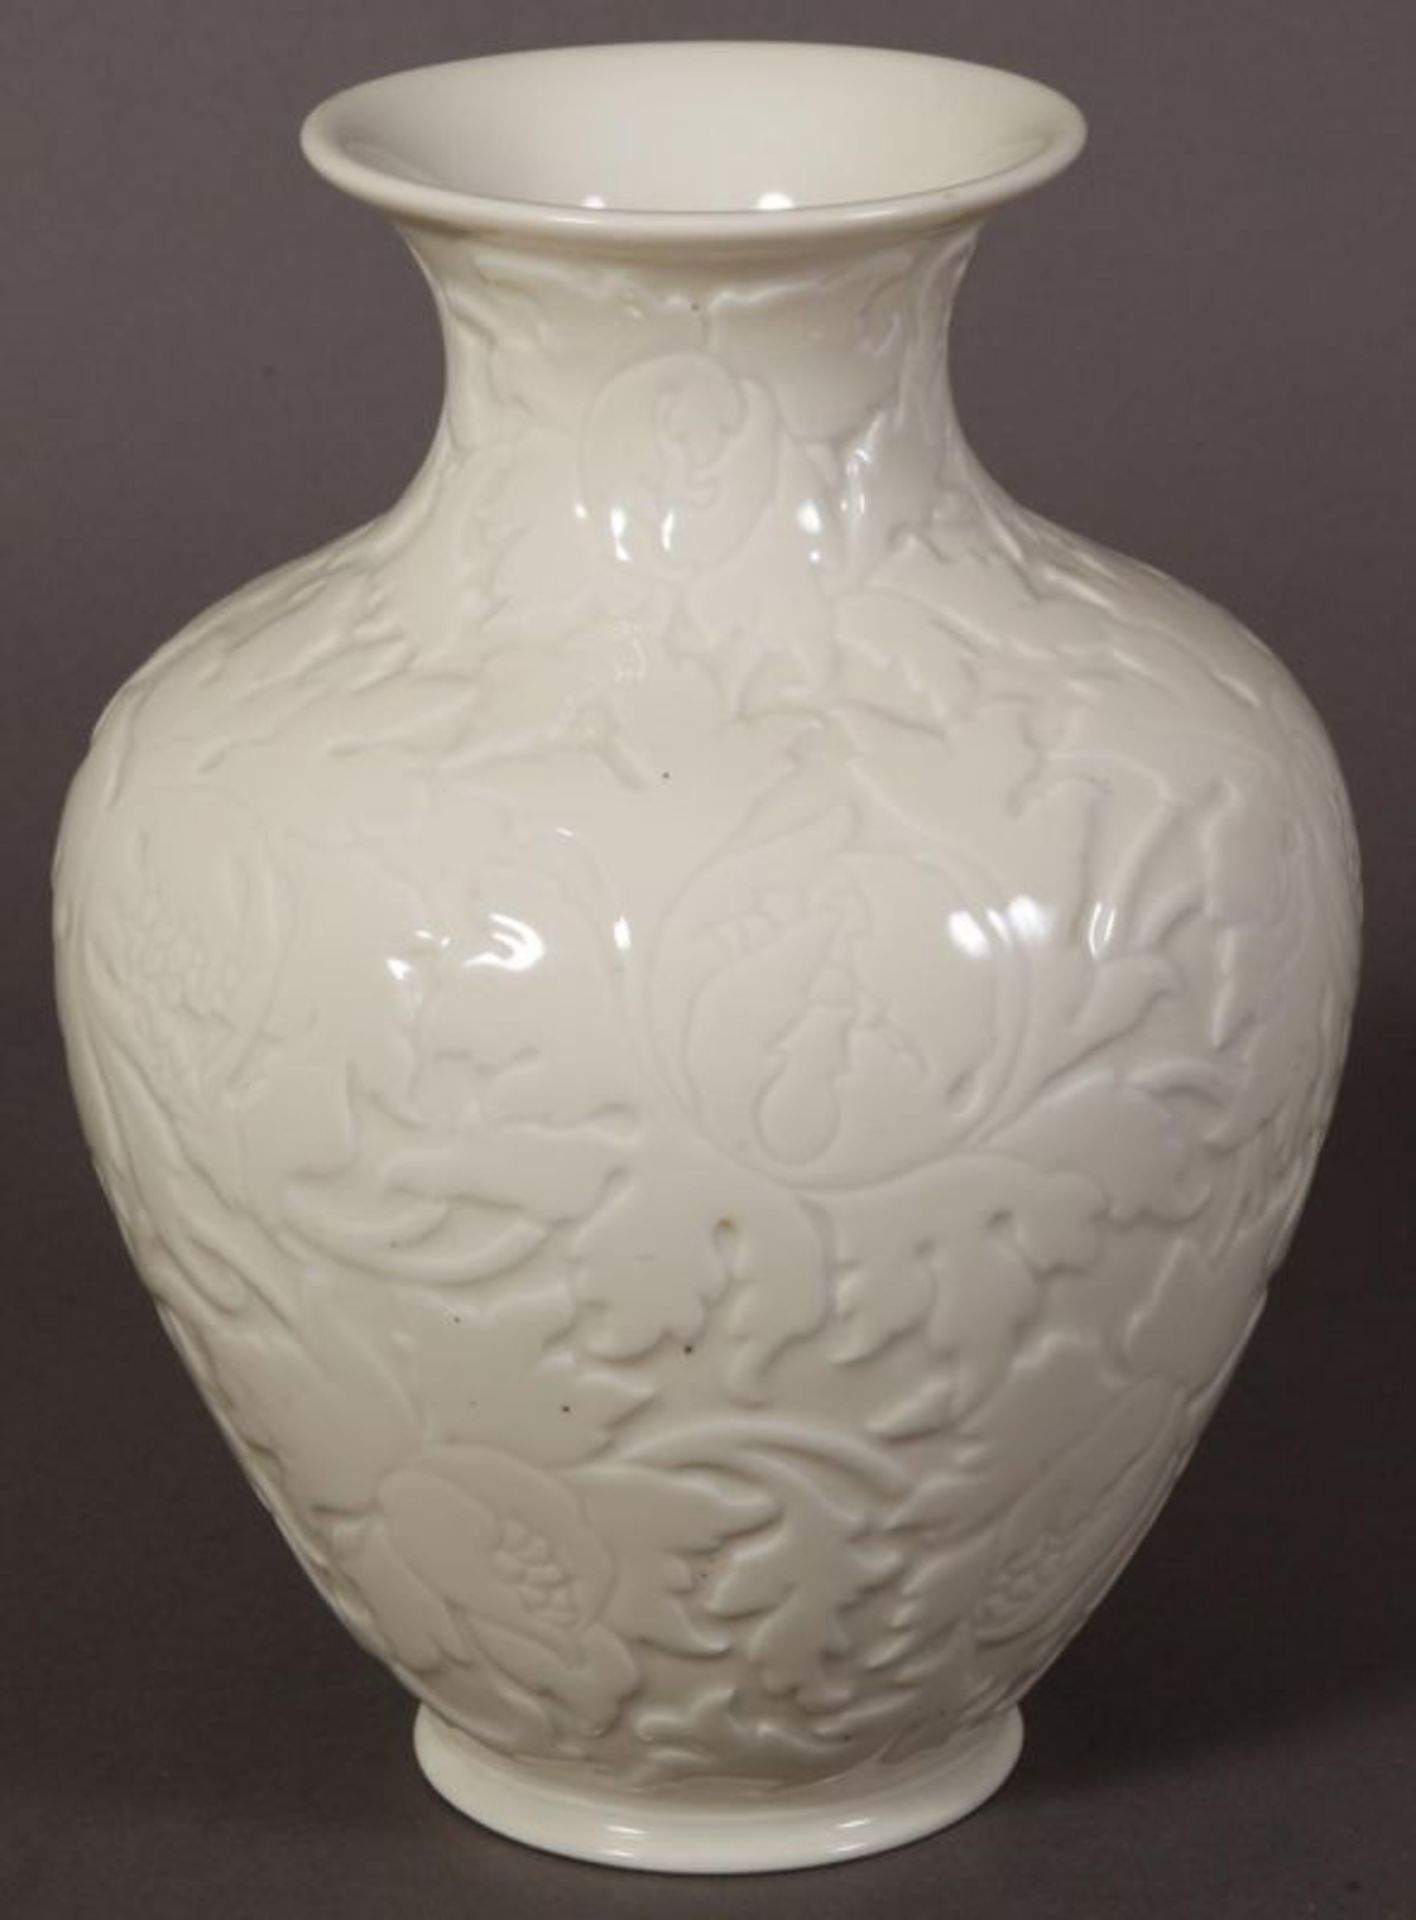 Bauchige "Rosenthal"-Vase, flächiger Floraldekor. Höhe 29 cm, Durchmesser 20 cm.